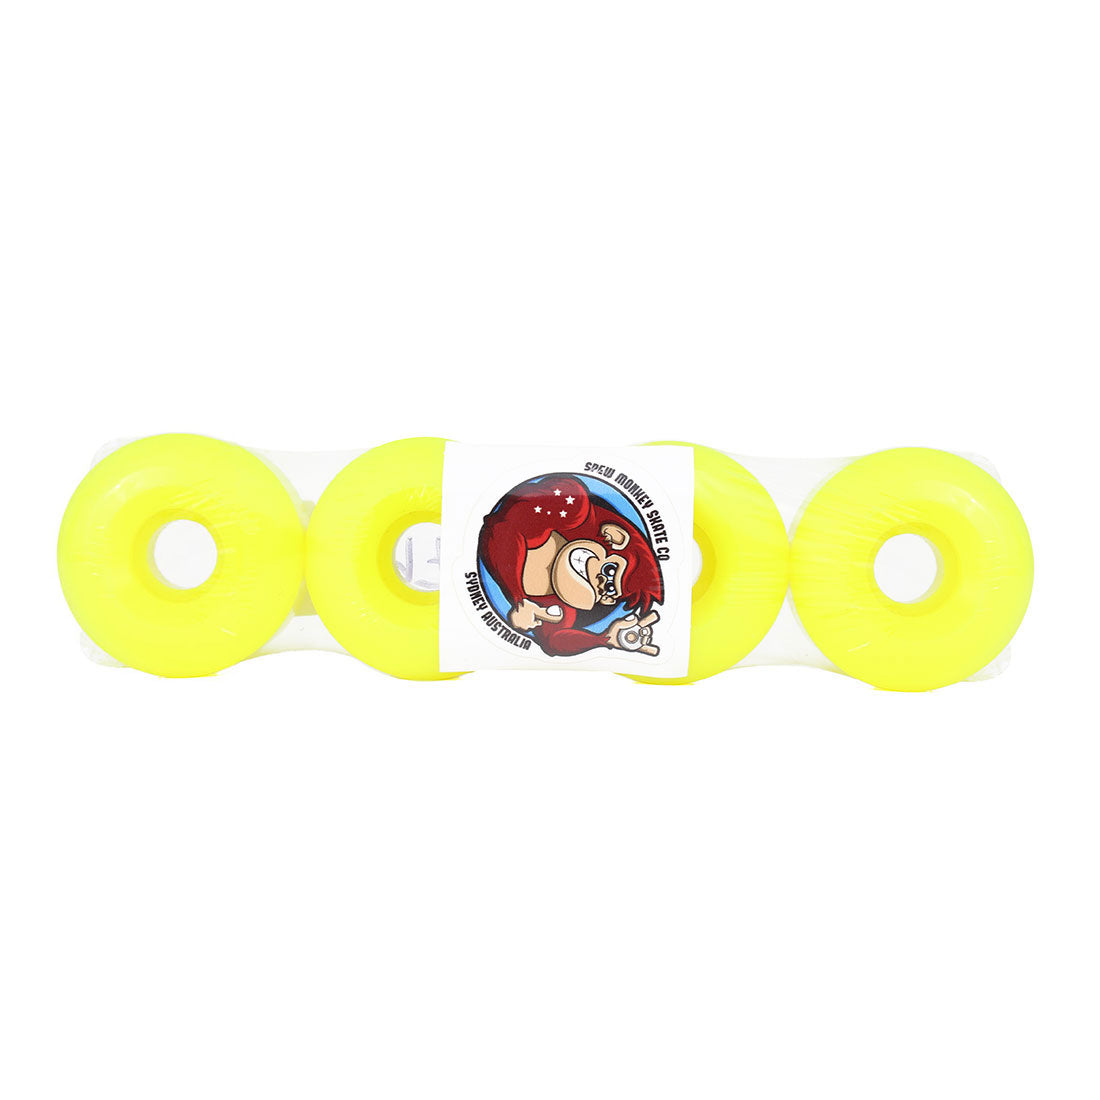 Spew Monkey #1s 54mm 97a Classic Wheels 4pk - Fluro Yellow Skateboard Wheels